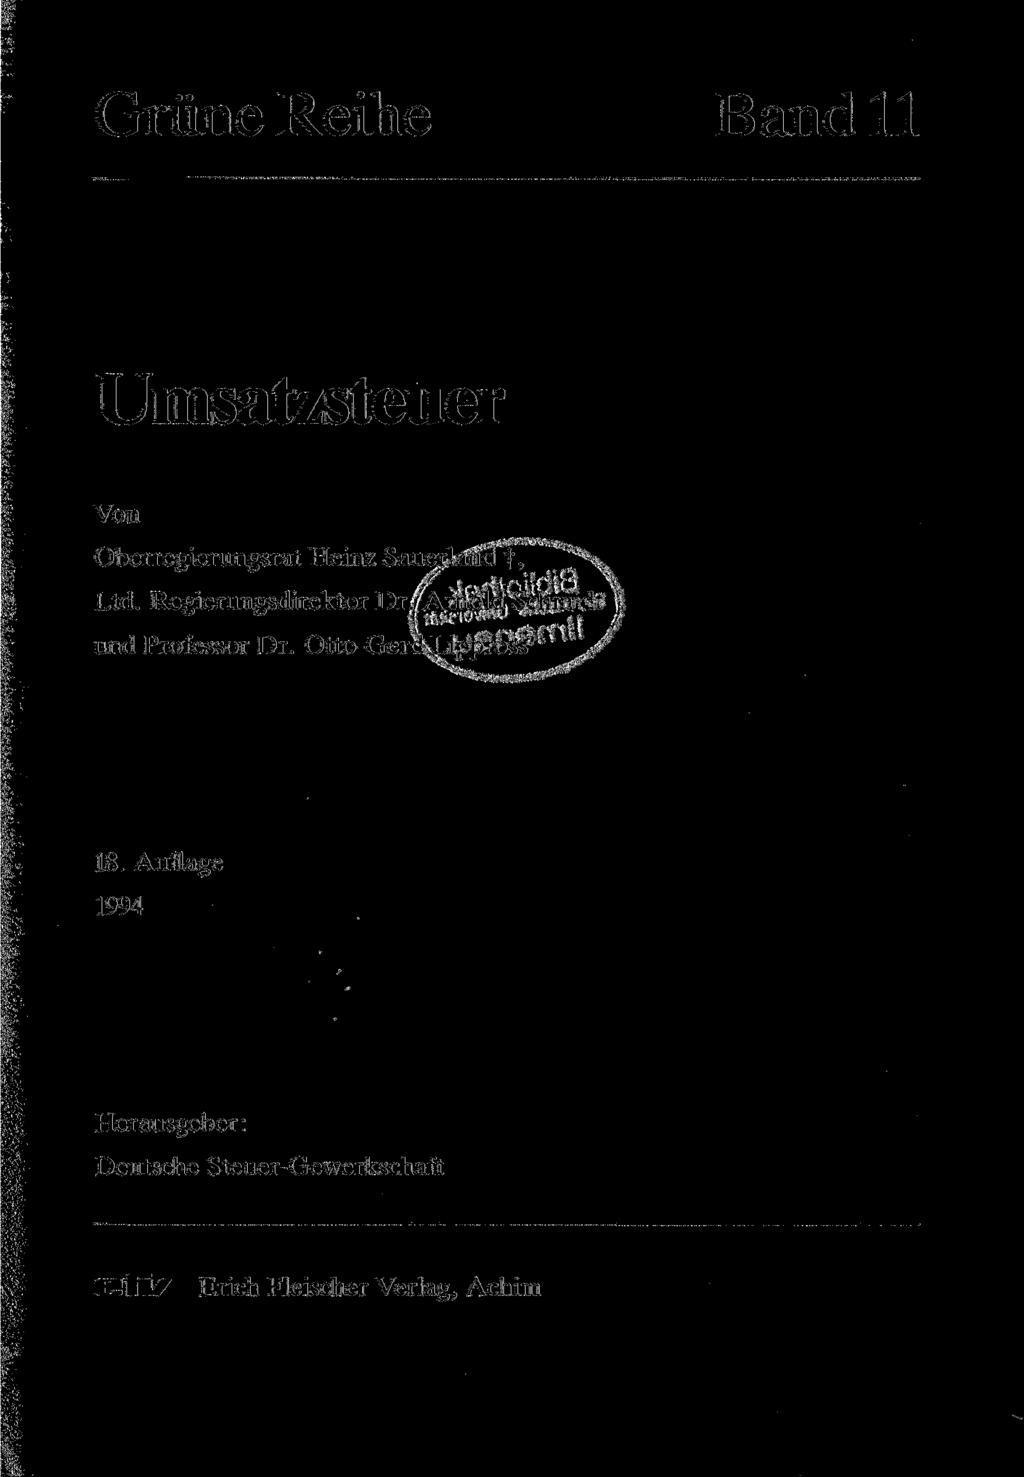 Grüne Reihe B and 11 Umsatzsteuer Von Oberregierungsrat Heinz Saueriäfia f, *v Ltd. Regierungsdirektor Dr.